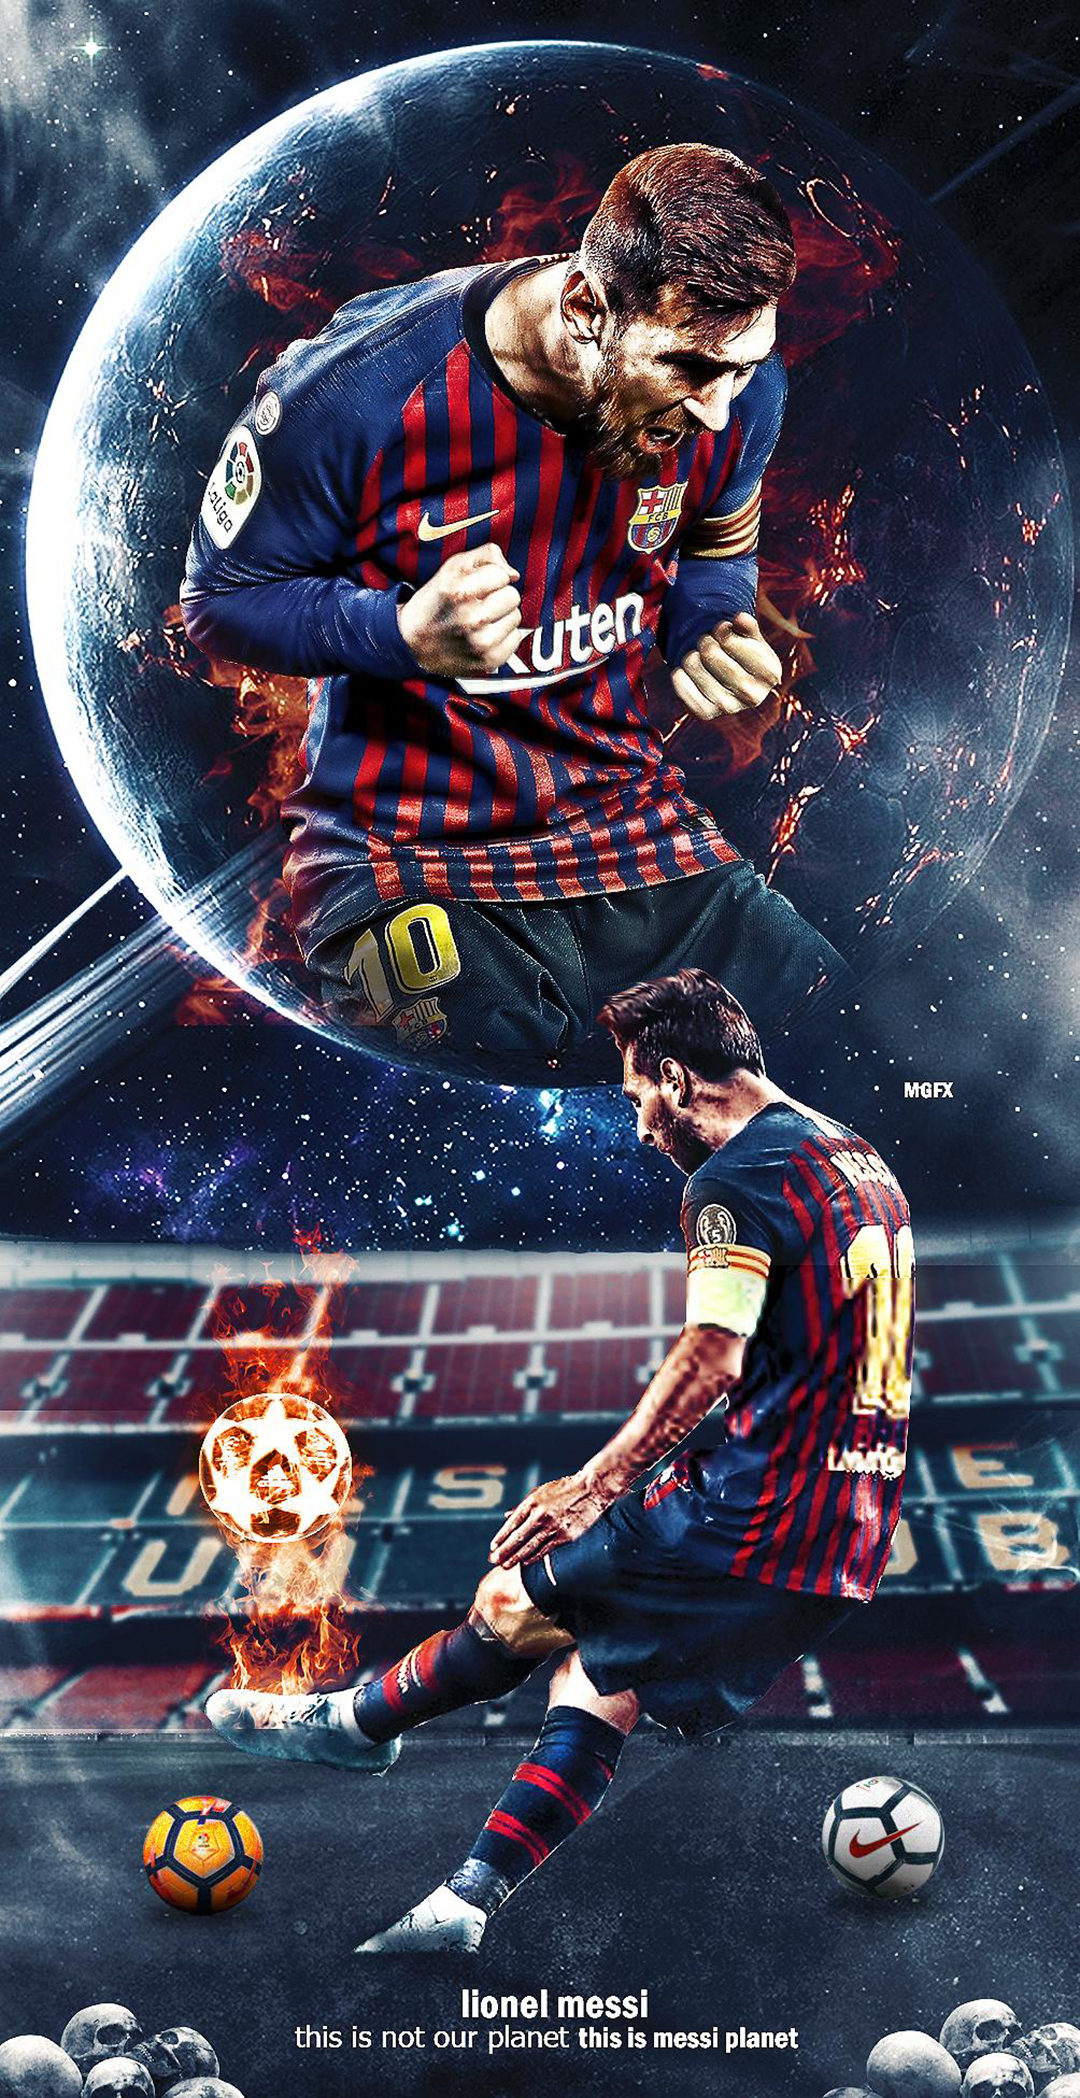 Hình nền Messi Barcelona: Hãy cùng tận hưởng niềm đam mê bóng đá và tình yêu với Messi bằng một tác phẩm nghệ thuật đẹp mắt với hình nền Messi Barcelona. Với sự kết hợp tuyệt vời giữa hình ảnh của Lionel Messi và màu sắc độc đáo của Barcelona, bạn sẽ không thể ngừng đắm chìm trong sự nghiệp bóng đá tuyệt vời của siêu sao này.